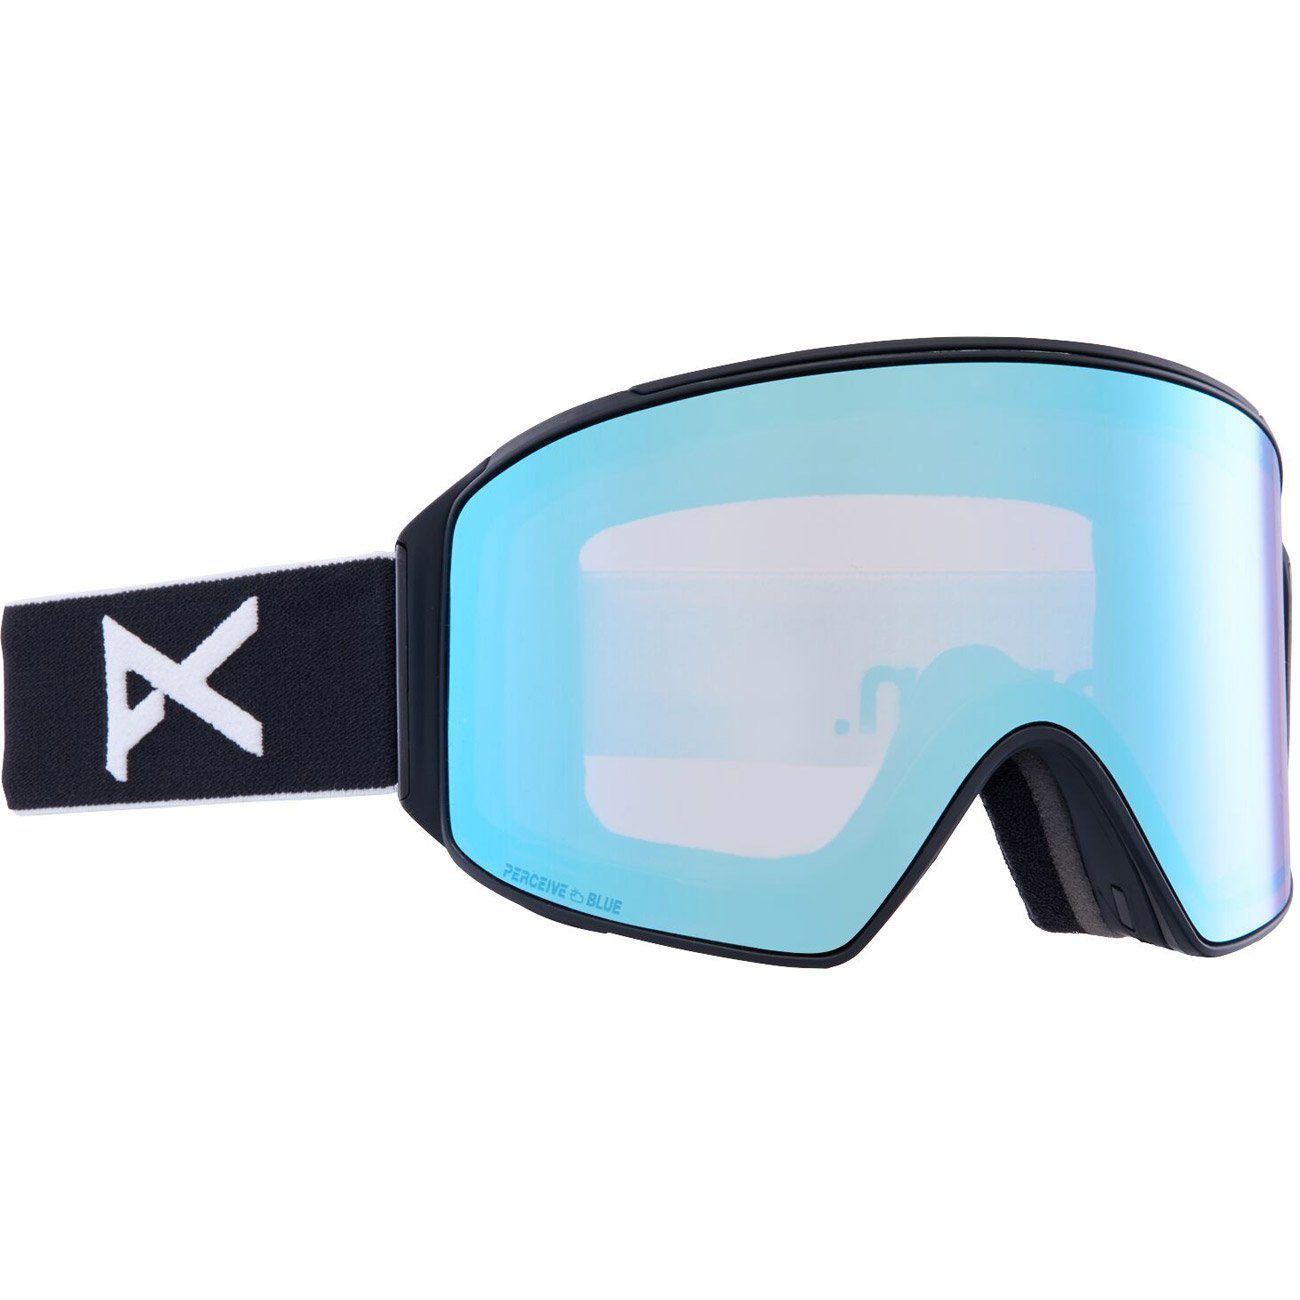 Anon Snowboardbrille, M4 CYLINDRICAL black/prcv vrbl blue